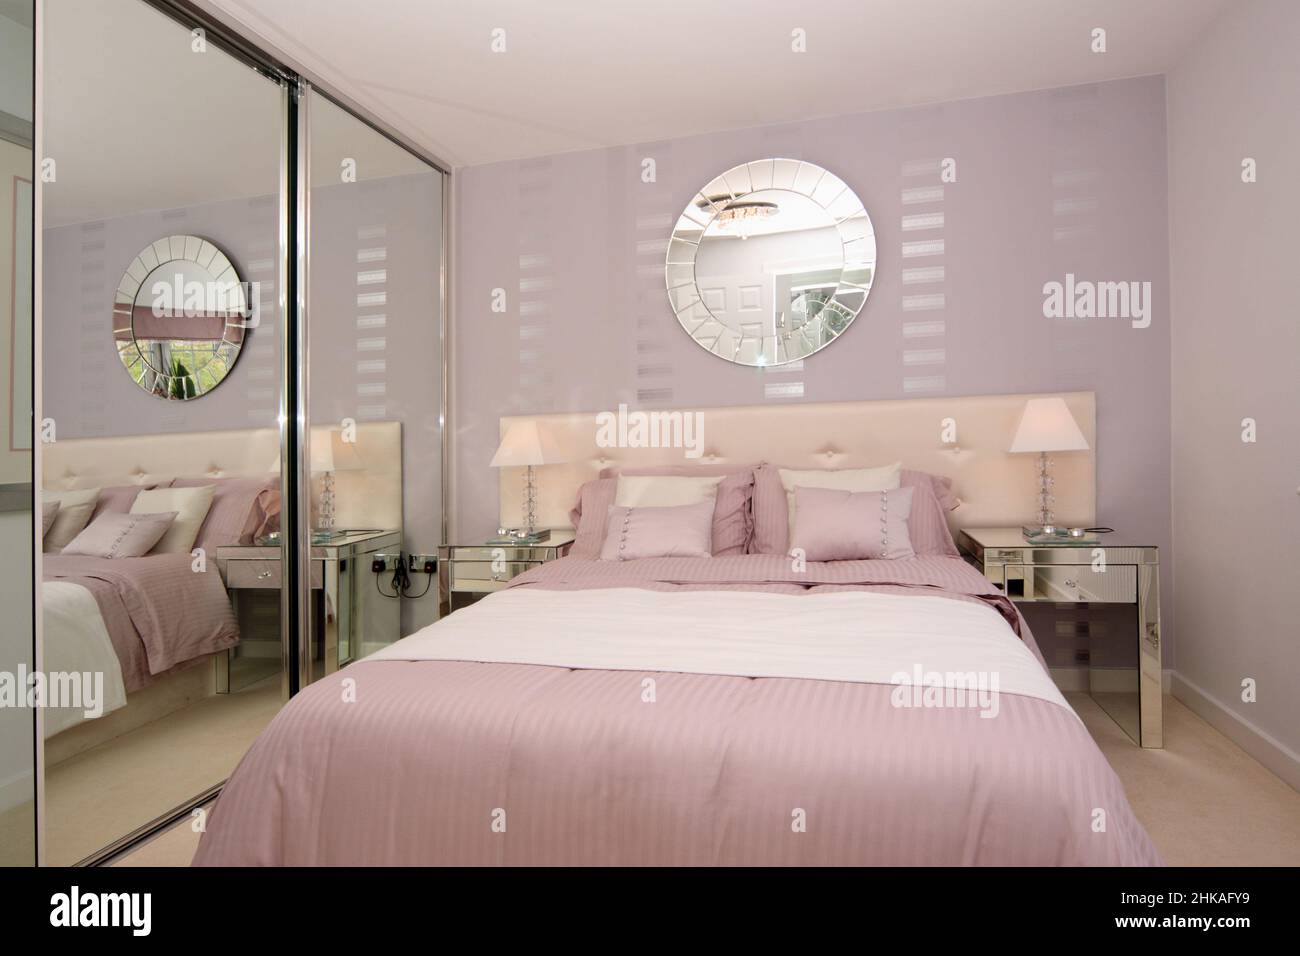 Dormitorio en combinación de colores rosa y blanco, con pared, luces de cabecera, cojines, espejo en la pared, cabecero acolchado, armarios con espejo Foto de stock